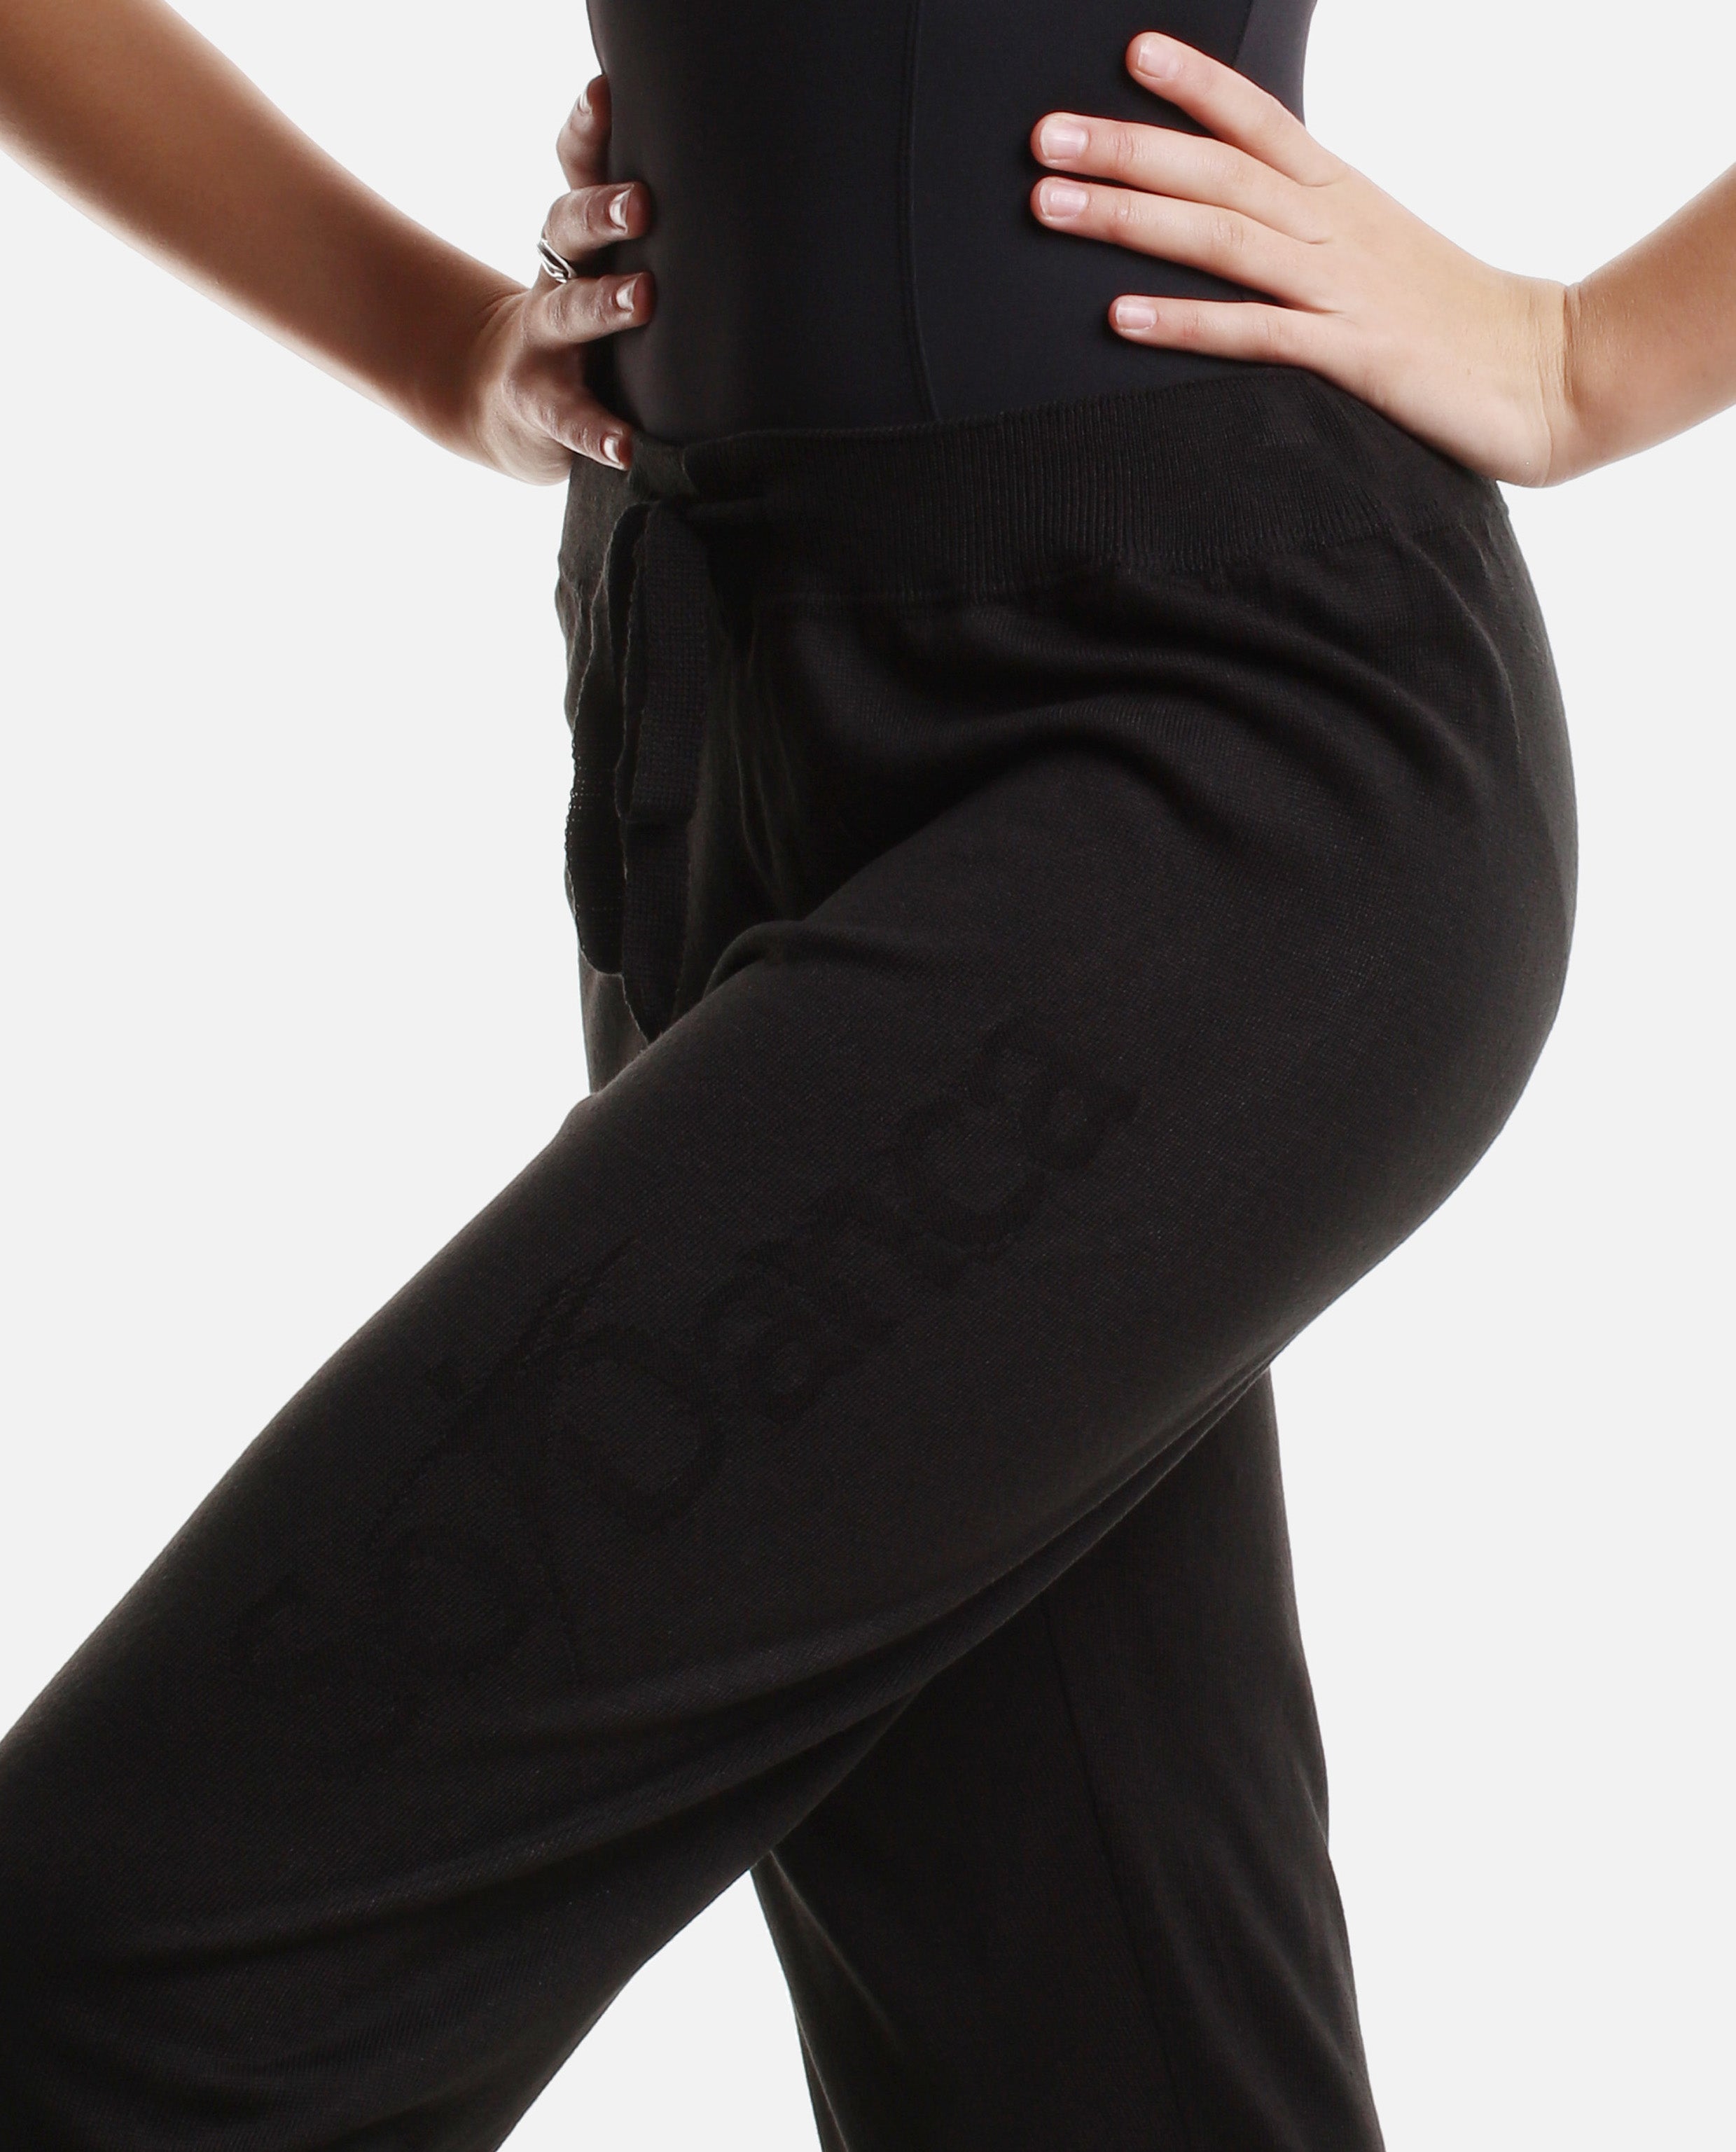 Dance Sweatpants, Warmup Black Dance Pants - So Danca UK & Ireland